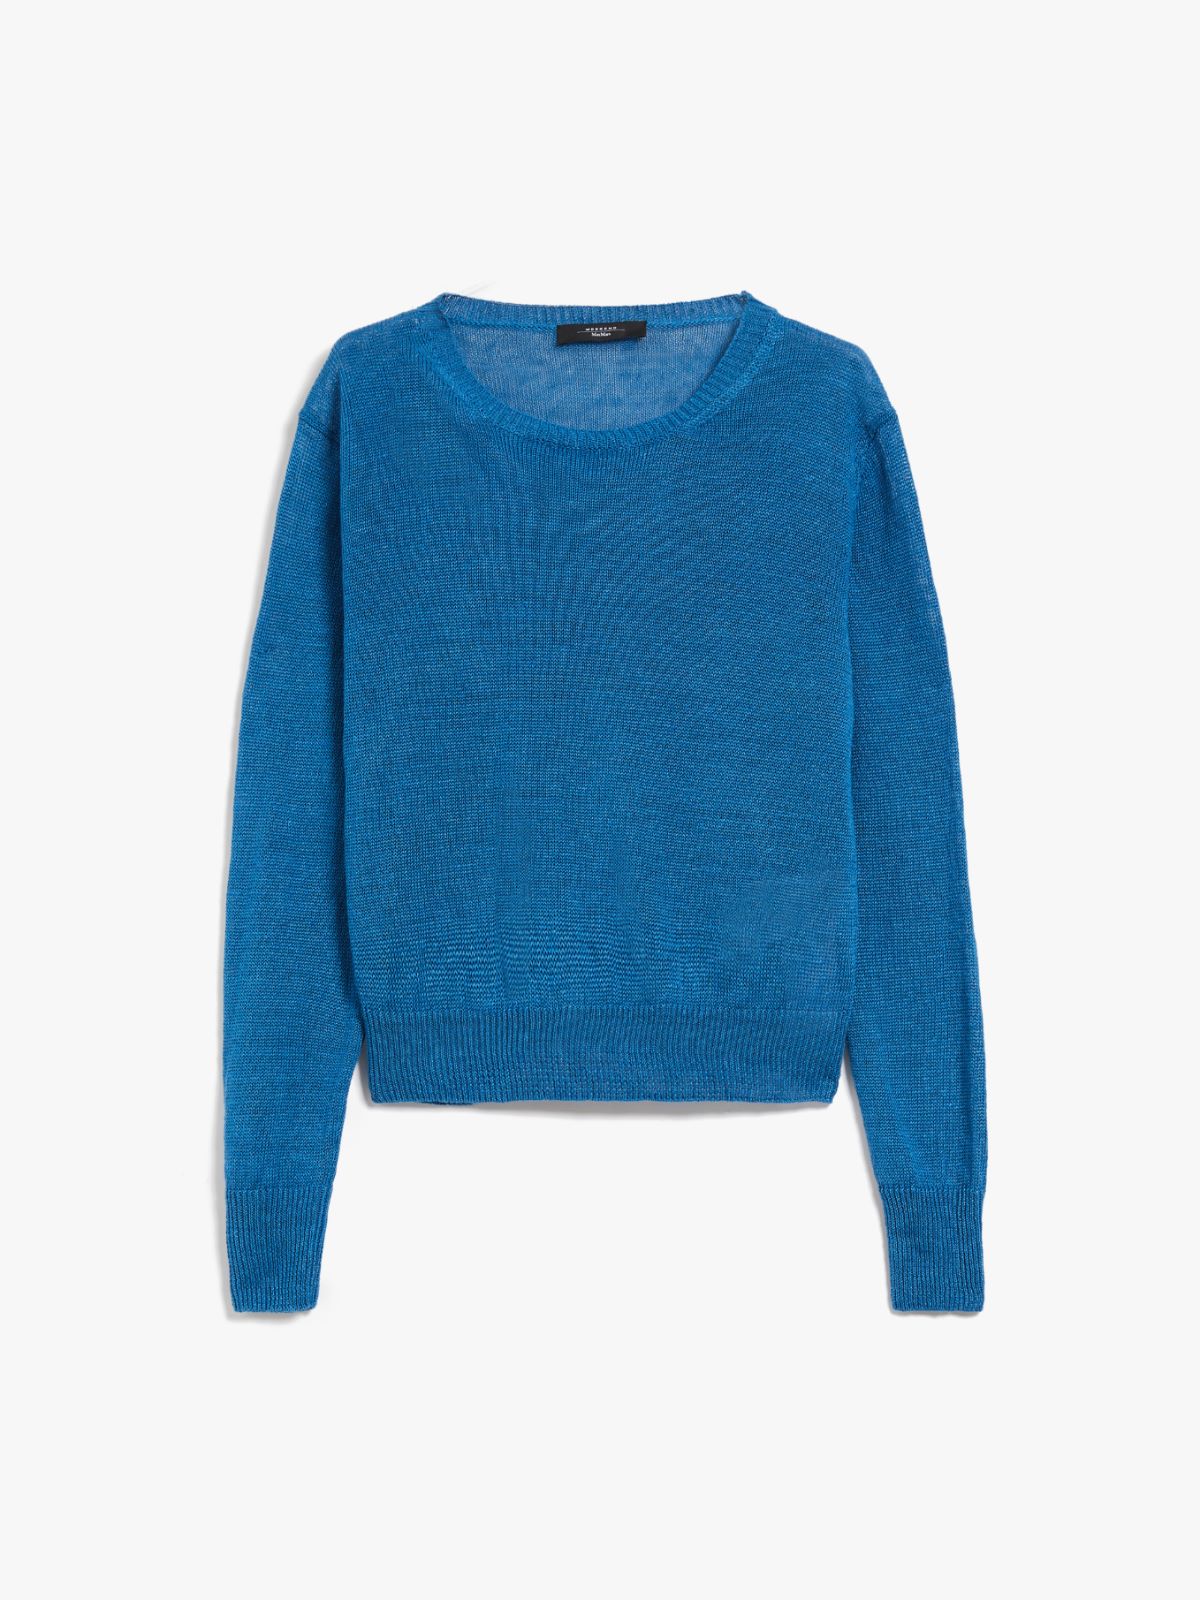 Linen knit jumper - BLUE AZURE - Weekend Max Mara - 6